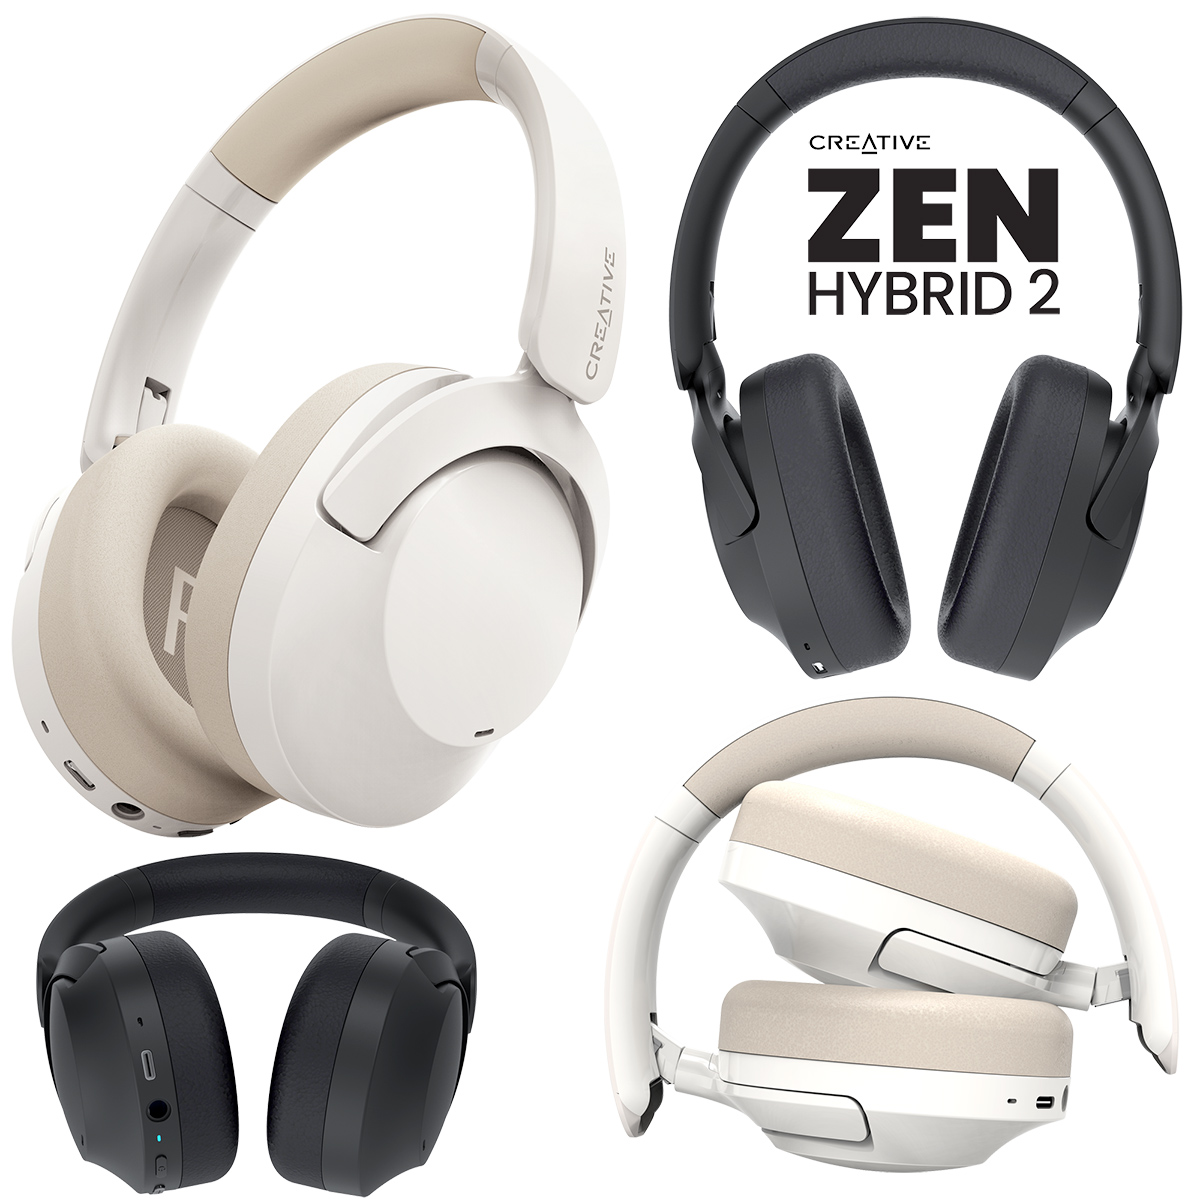 Creative ZEN Hybrid 2 Over Ear Headphones